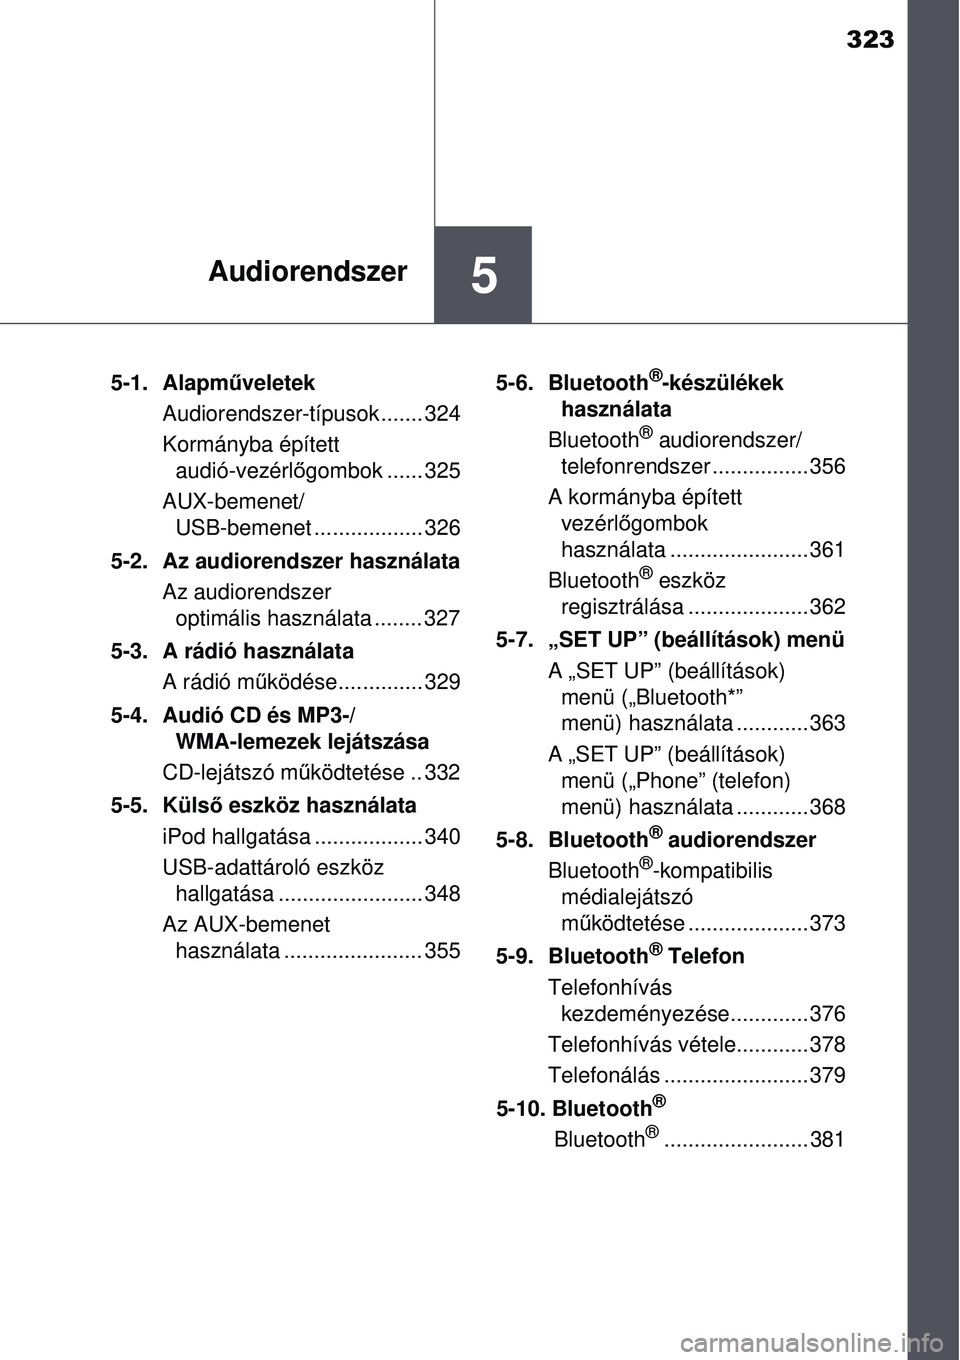 TOYOTA AURIS 2016  Kezelési útmutató (in Hungarian) 323
5Audiorendszer
5-1. Alapműveletek
Audiorendszer-típusok....... 324
Kormányba épített  audió-vezérl őgombok ...... 325
AUX-bemenet/ USB-bemenet .................. 326
5-2. Az audiorendszer 